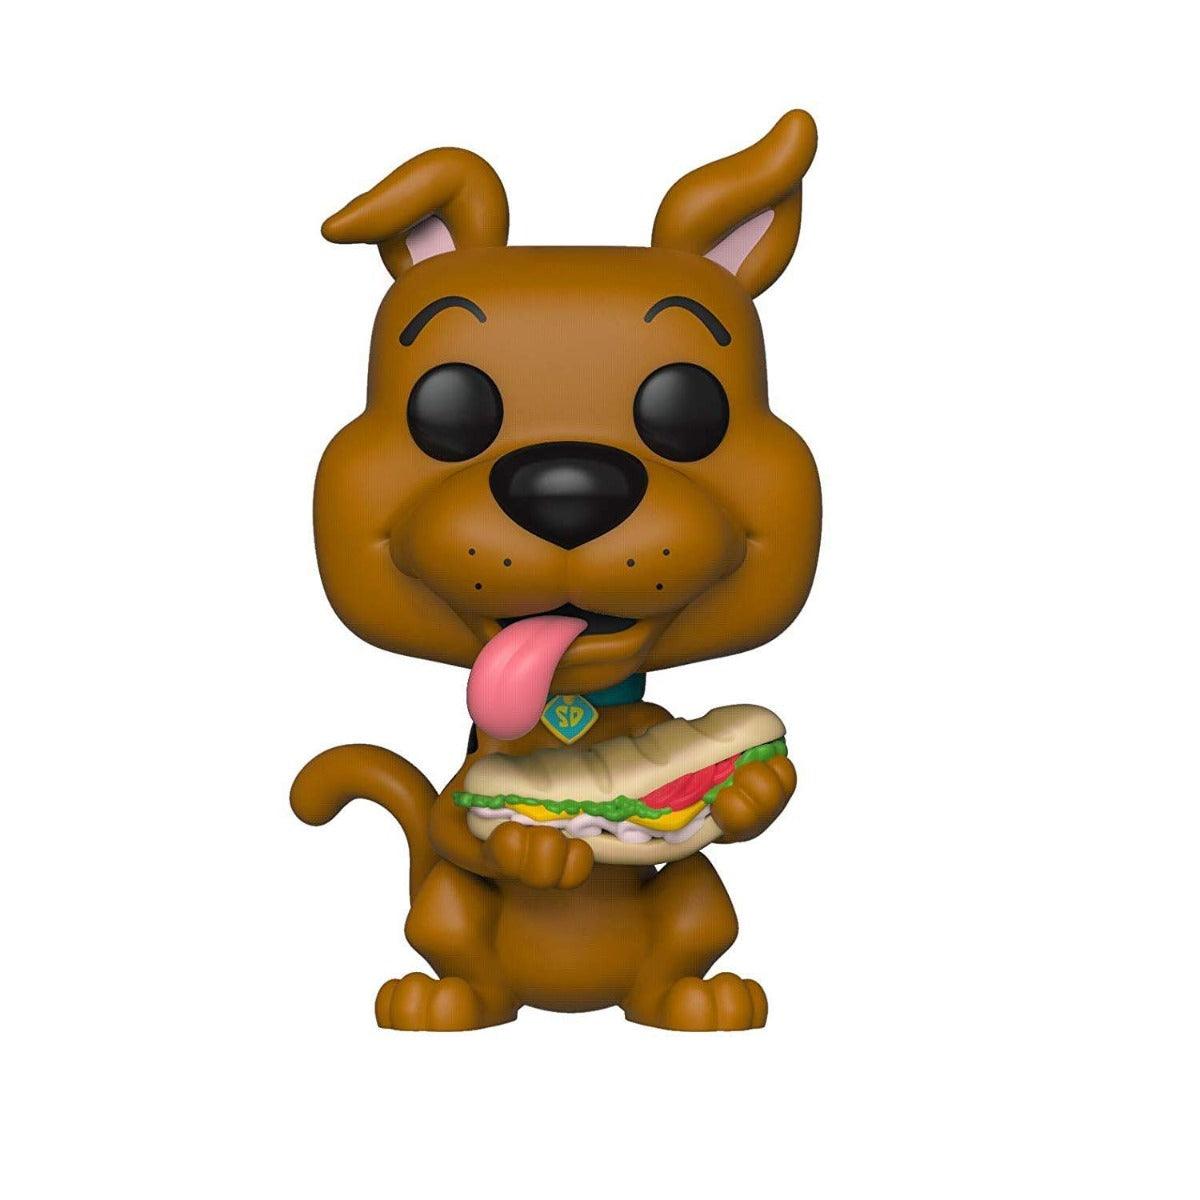 Funko Pop Scooby Doo w/ Sandwich - Scooby Doo Animation 625